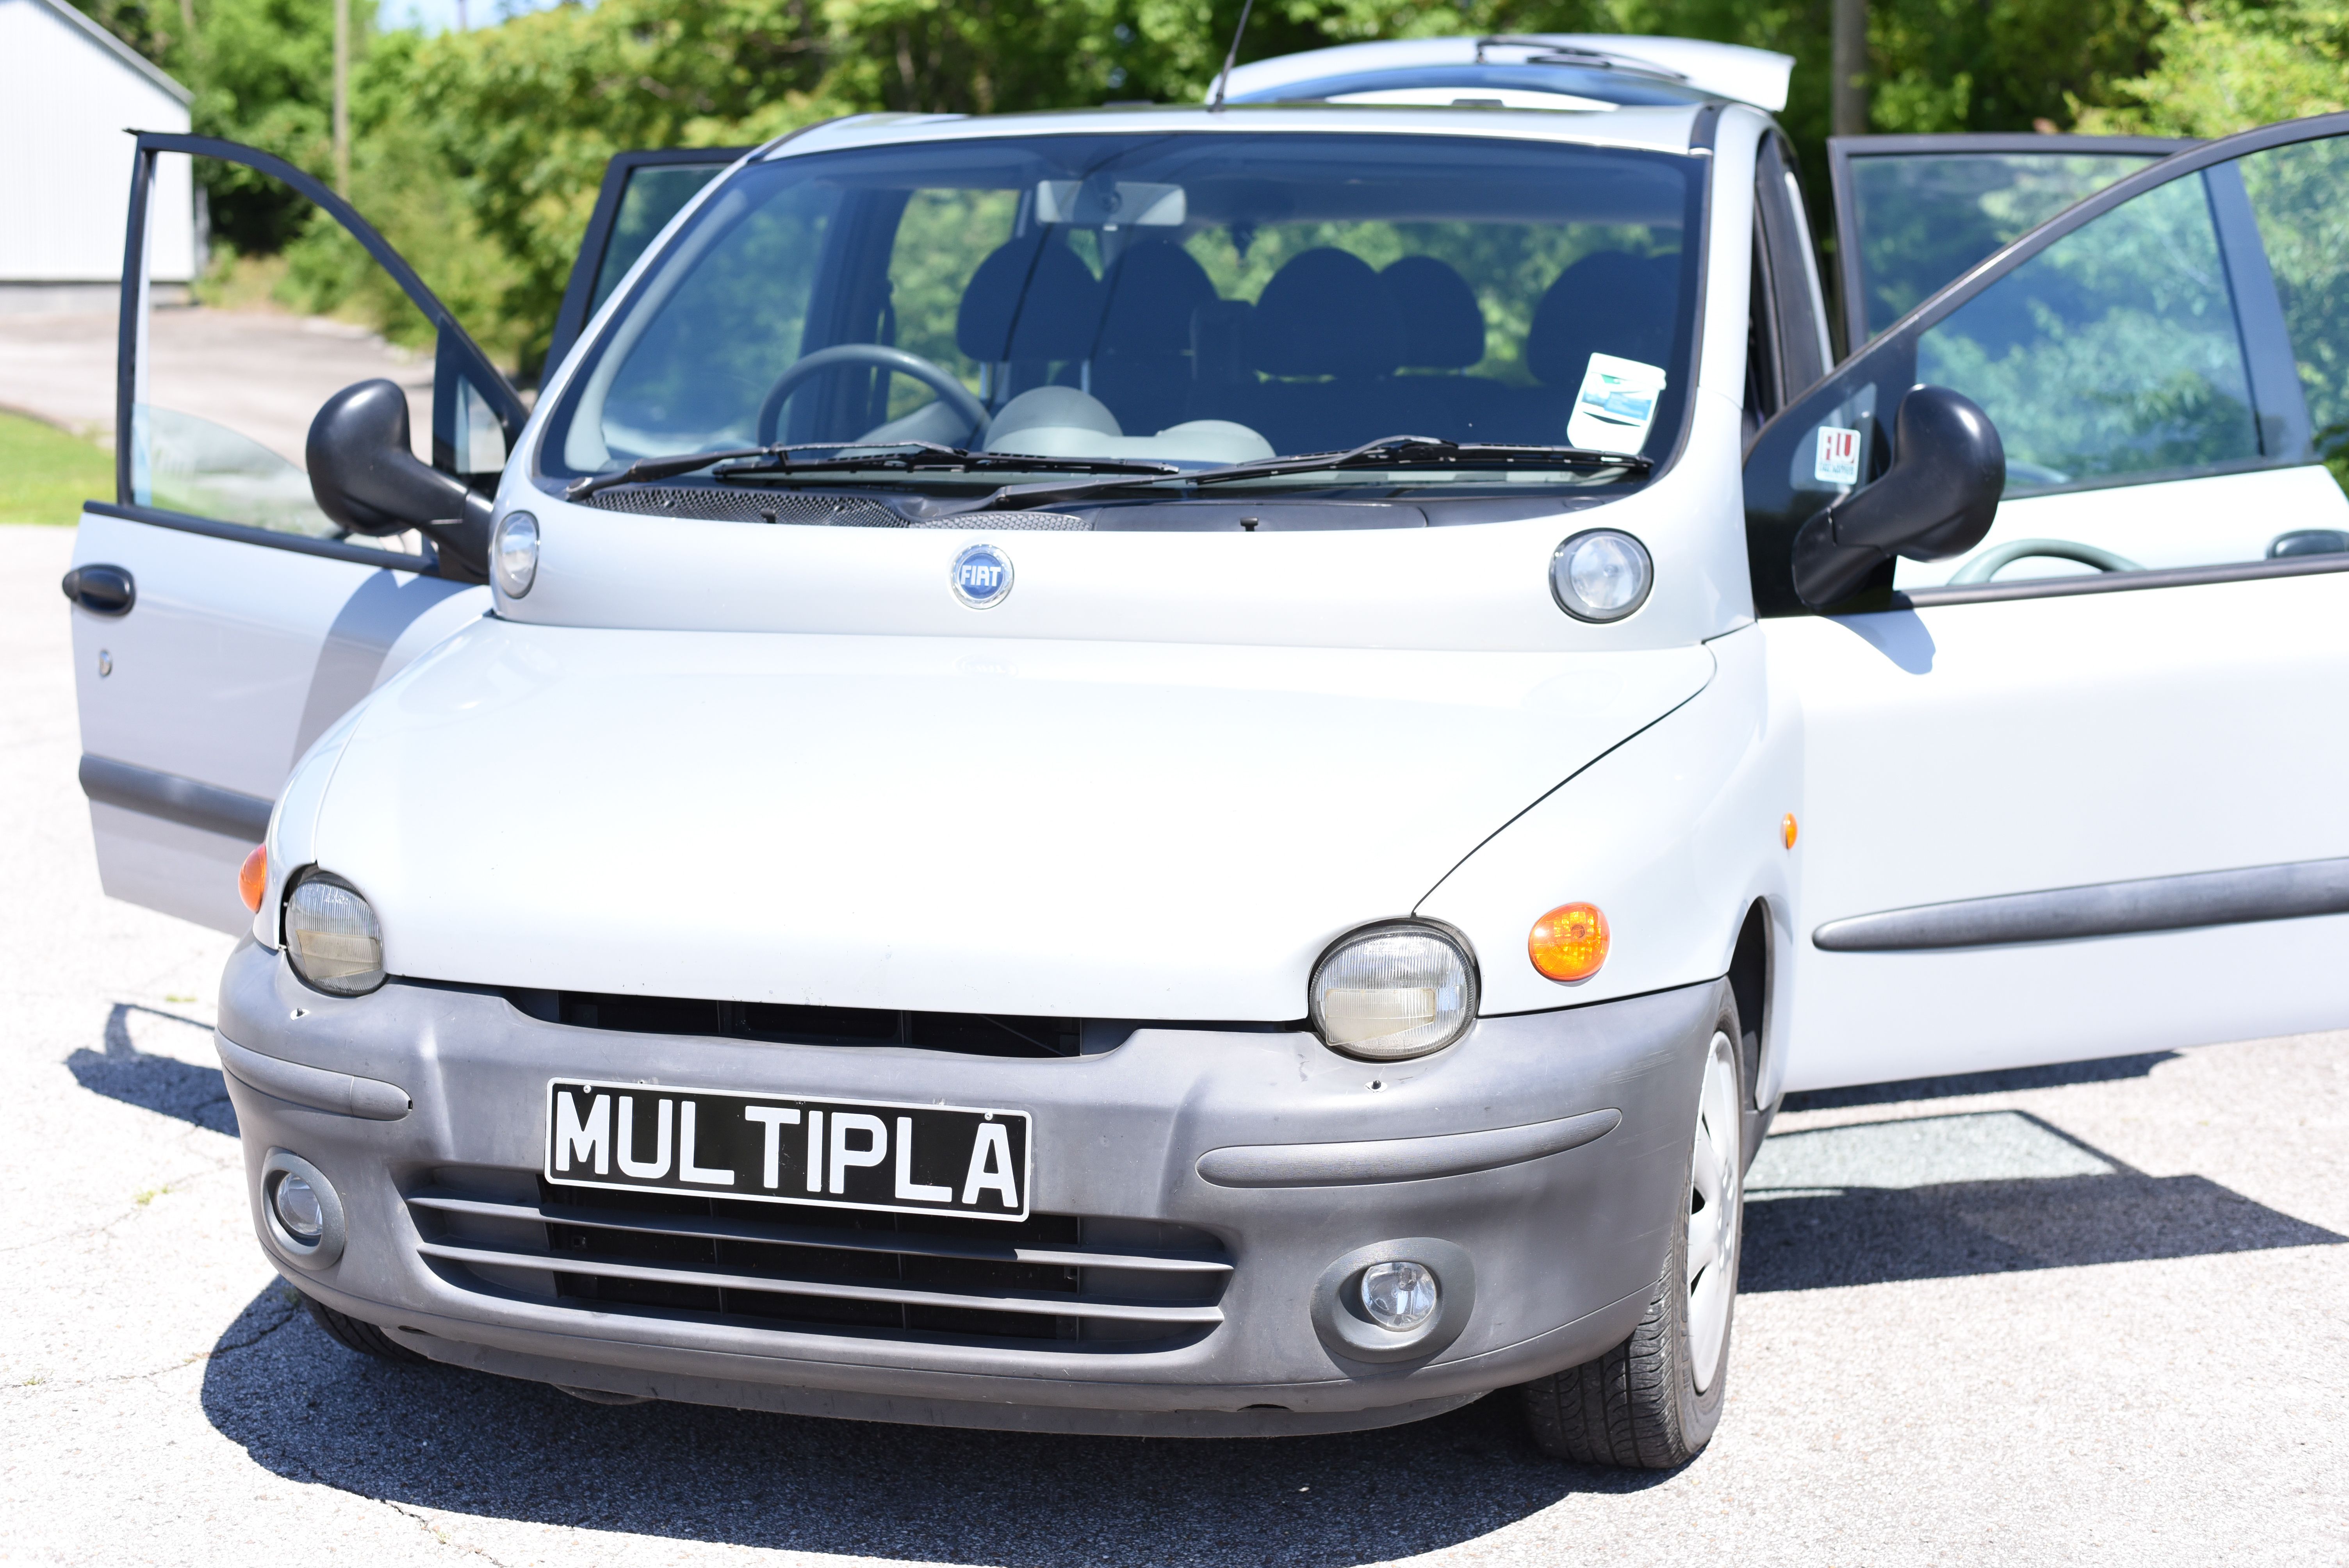 Fiat Multipla Front for RiversCars.Com Via @GingerlyCaptured